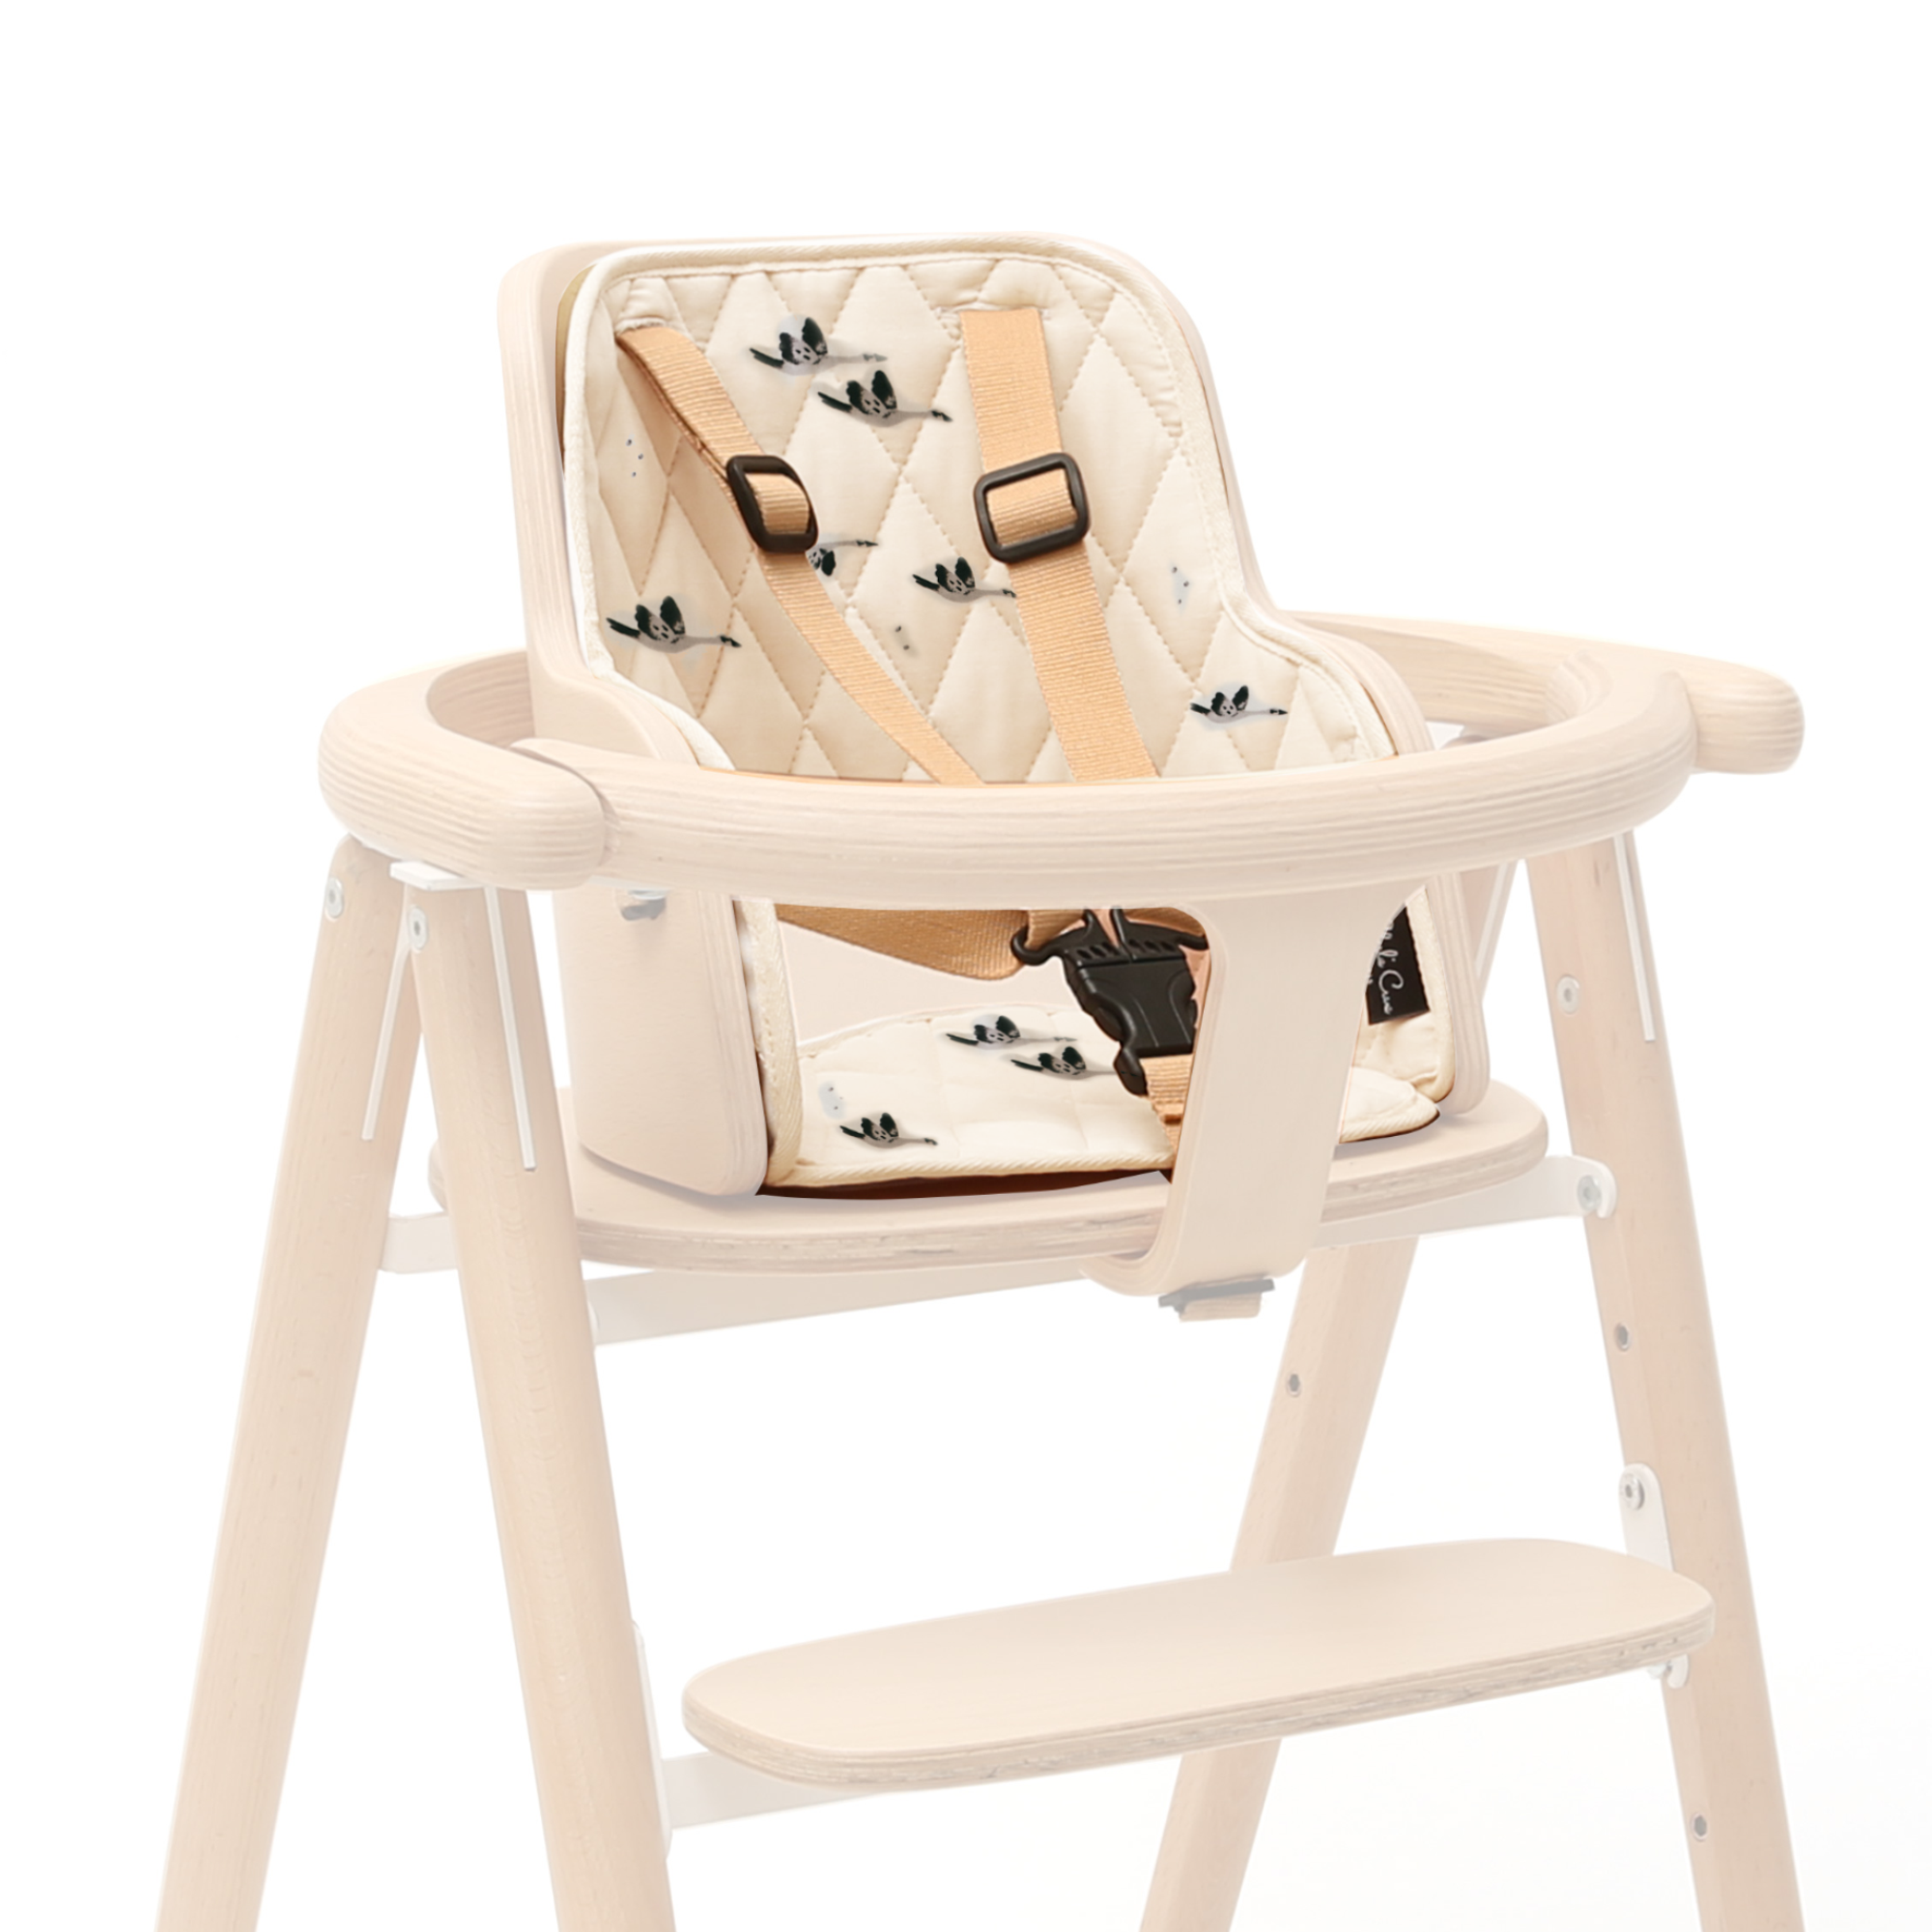 Cushion for TOBO Evolutionary Chair